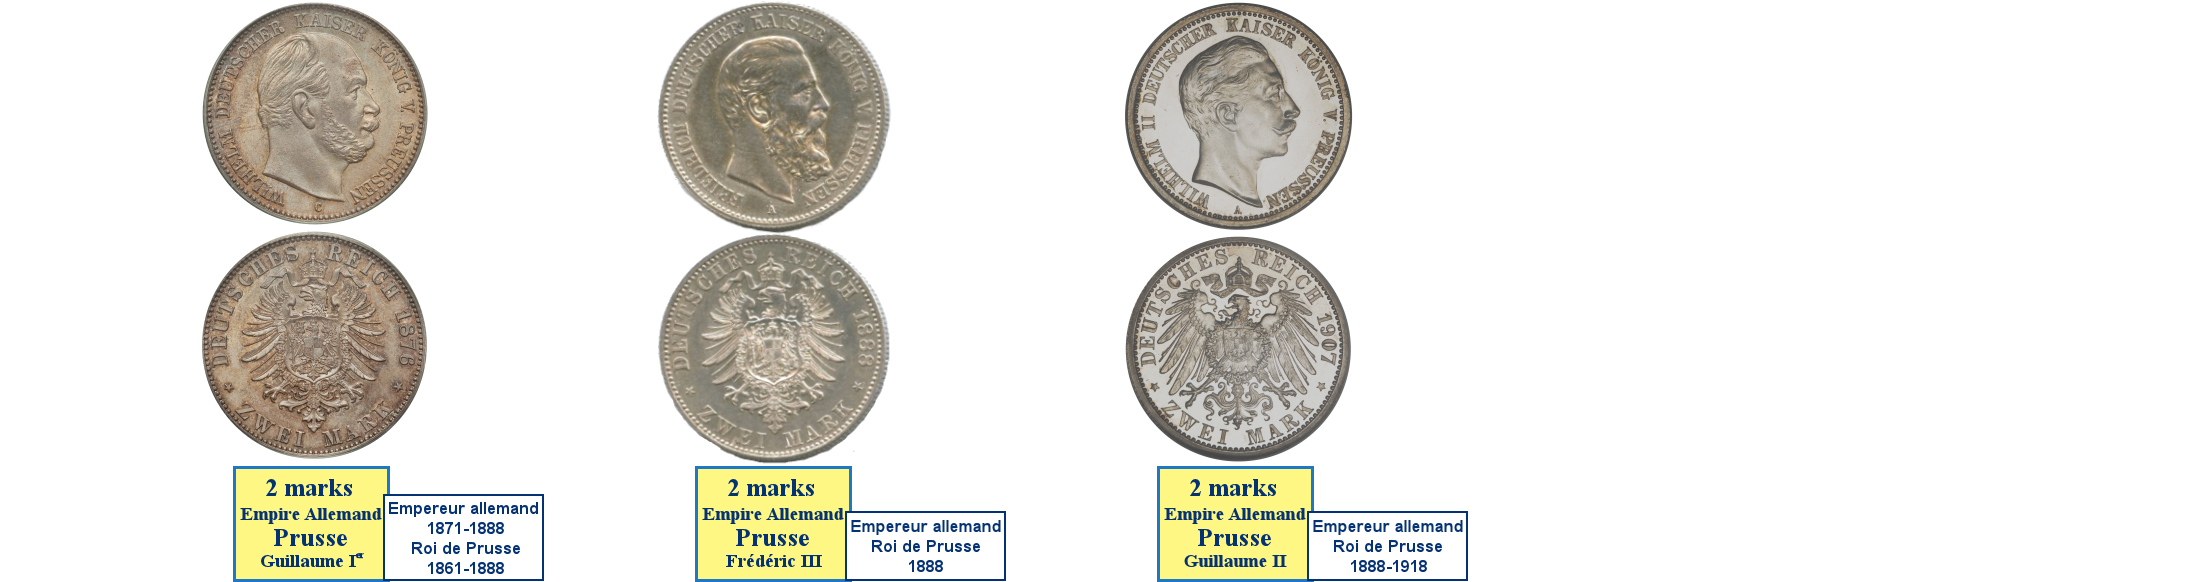 Photos de pièces de monnaies du Royaume de Prusse dans l'Empire Allemand